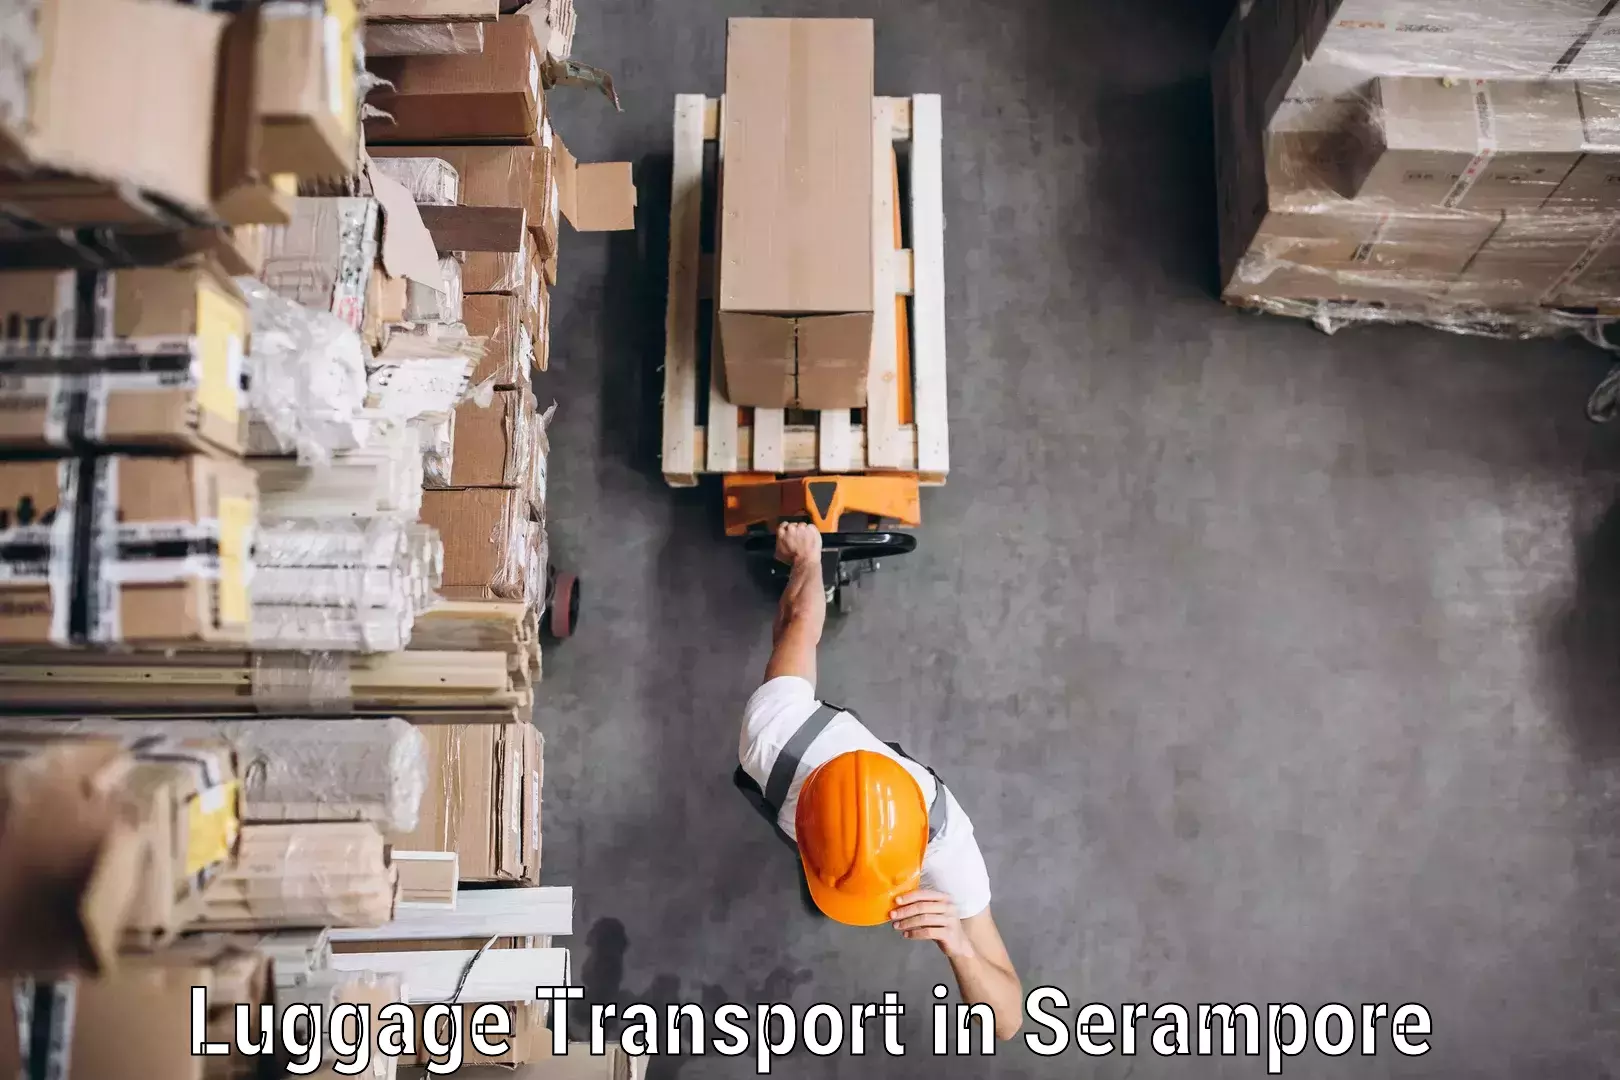 Luggage shipping estimate in Serampore